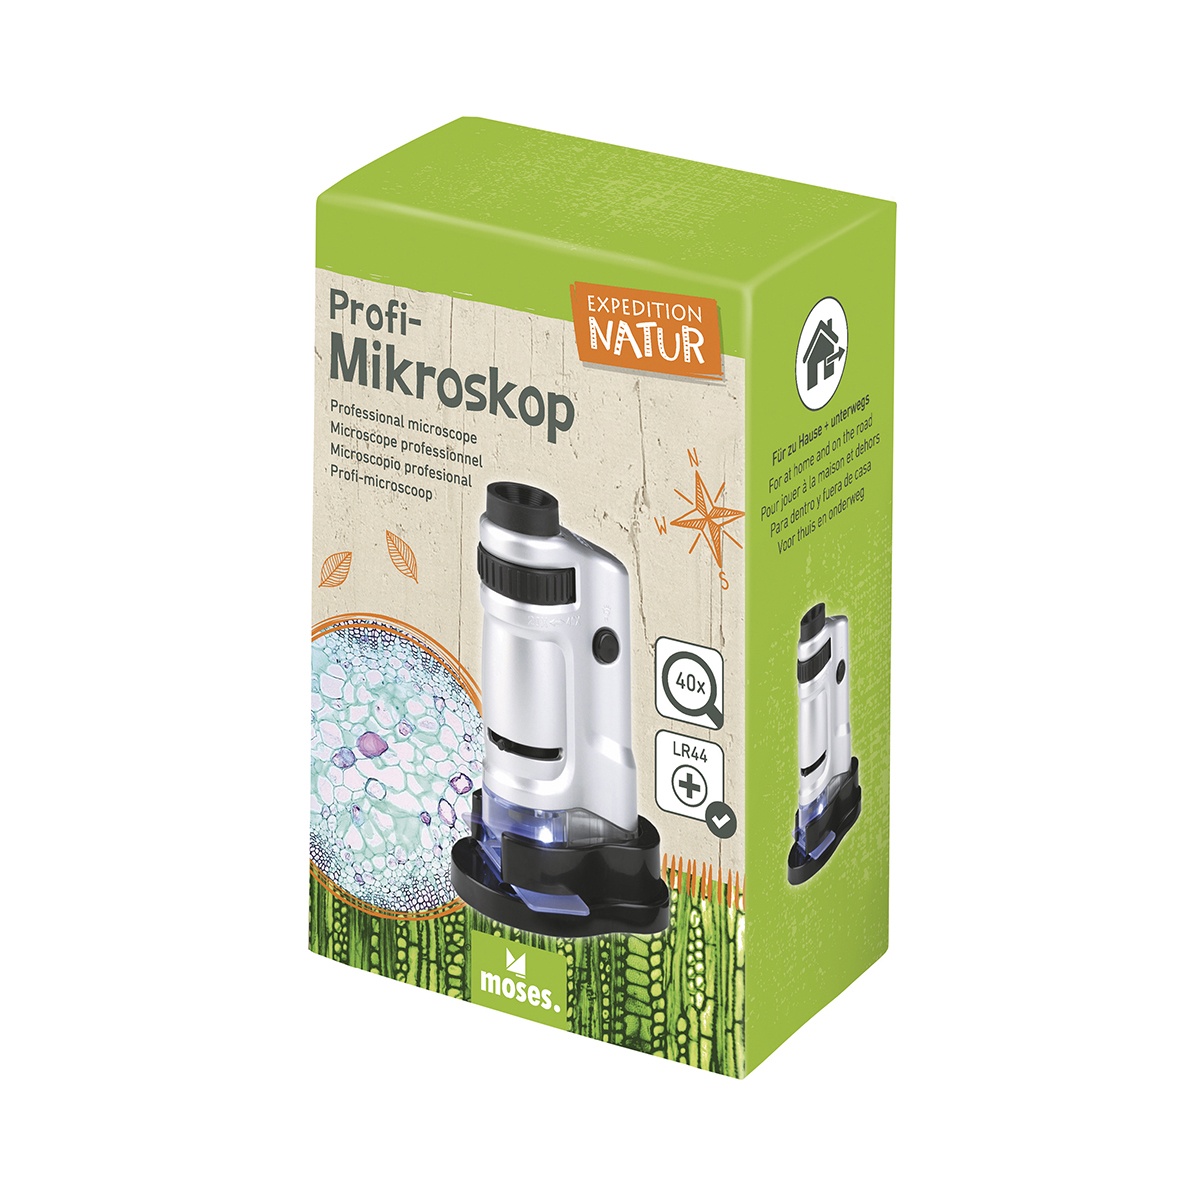 Expedition Natur Profi-Mikroskop von moses